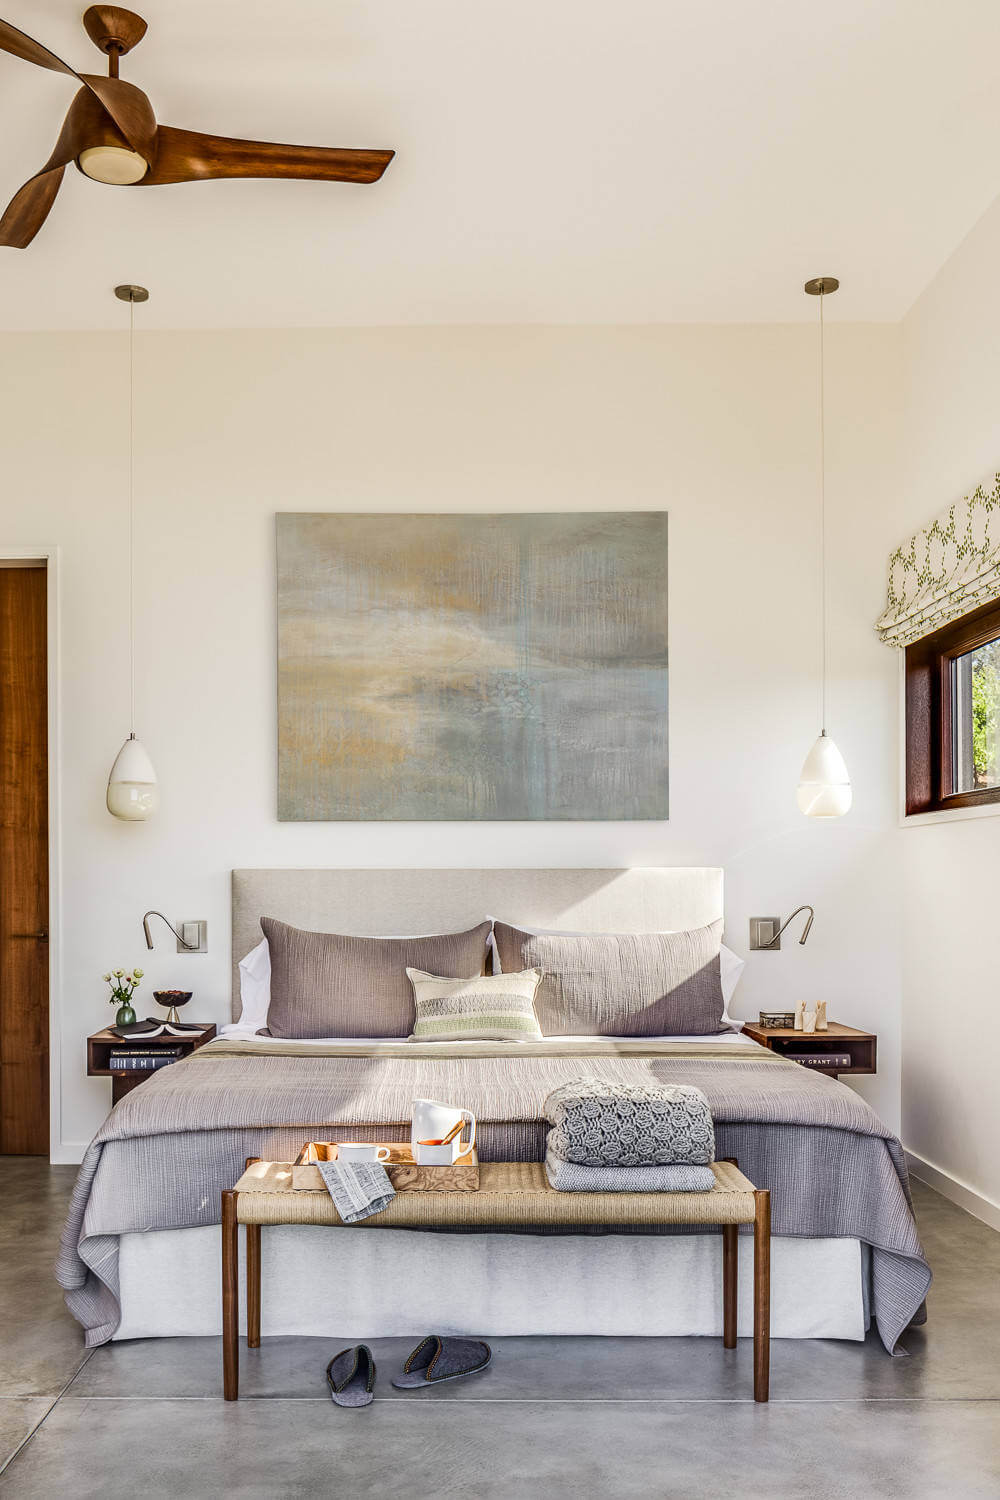 Calm colors in Zen bedroom design